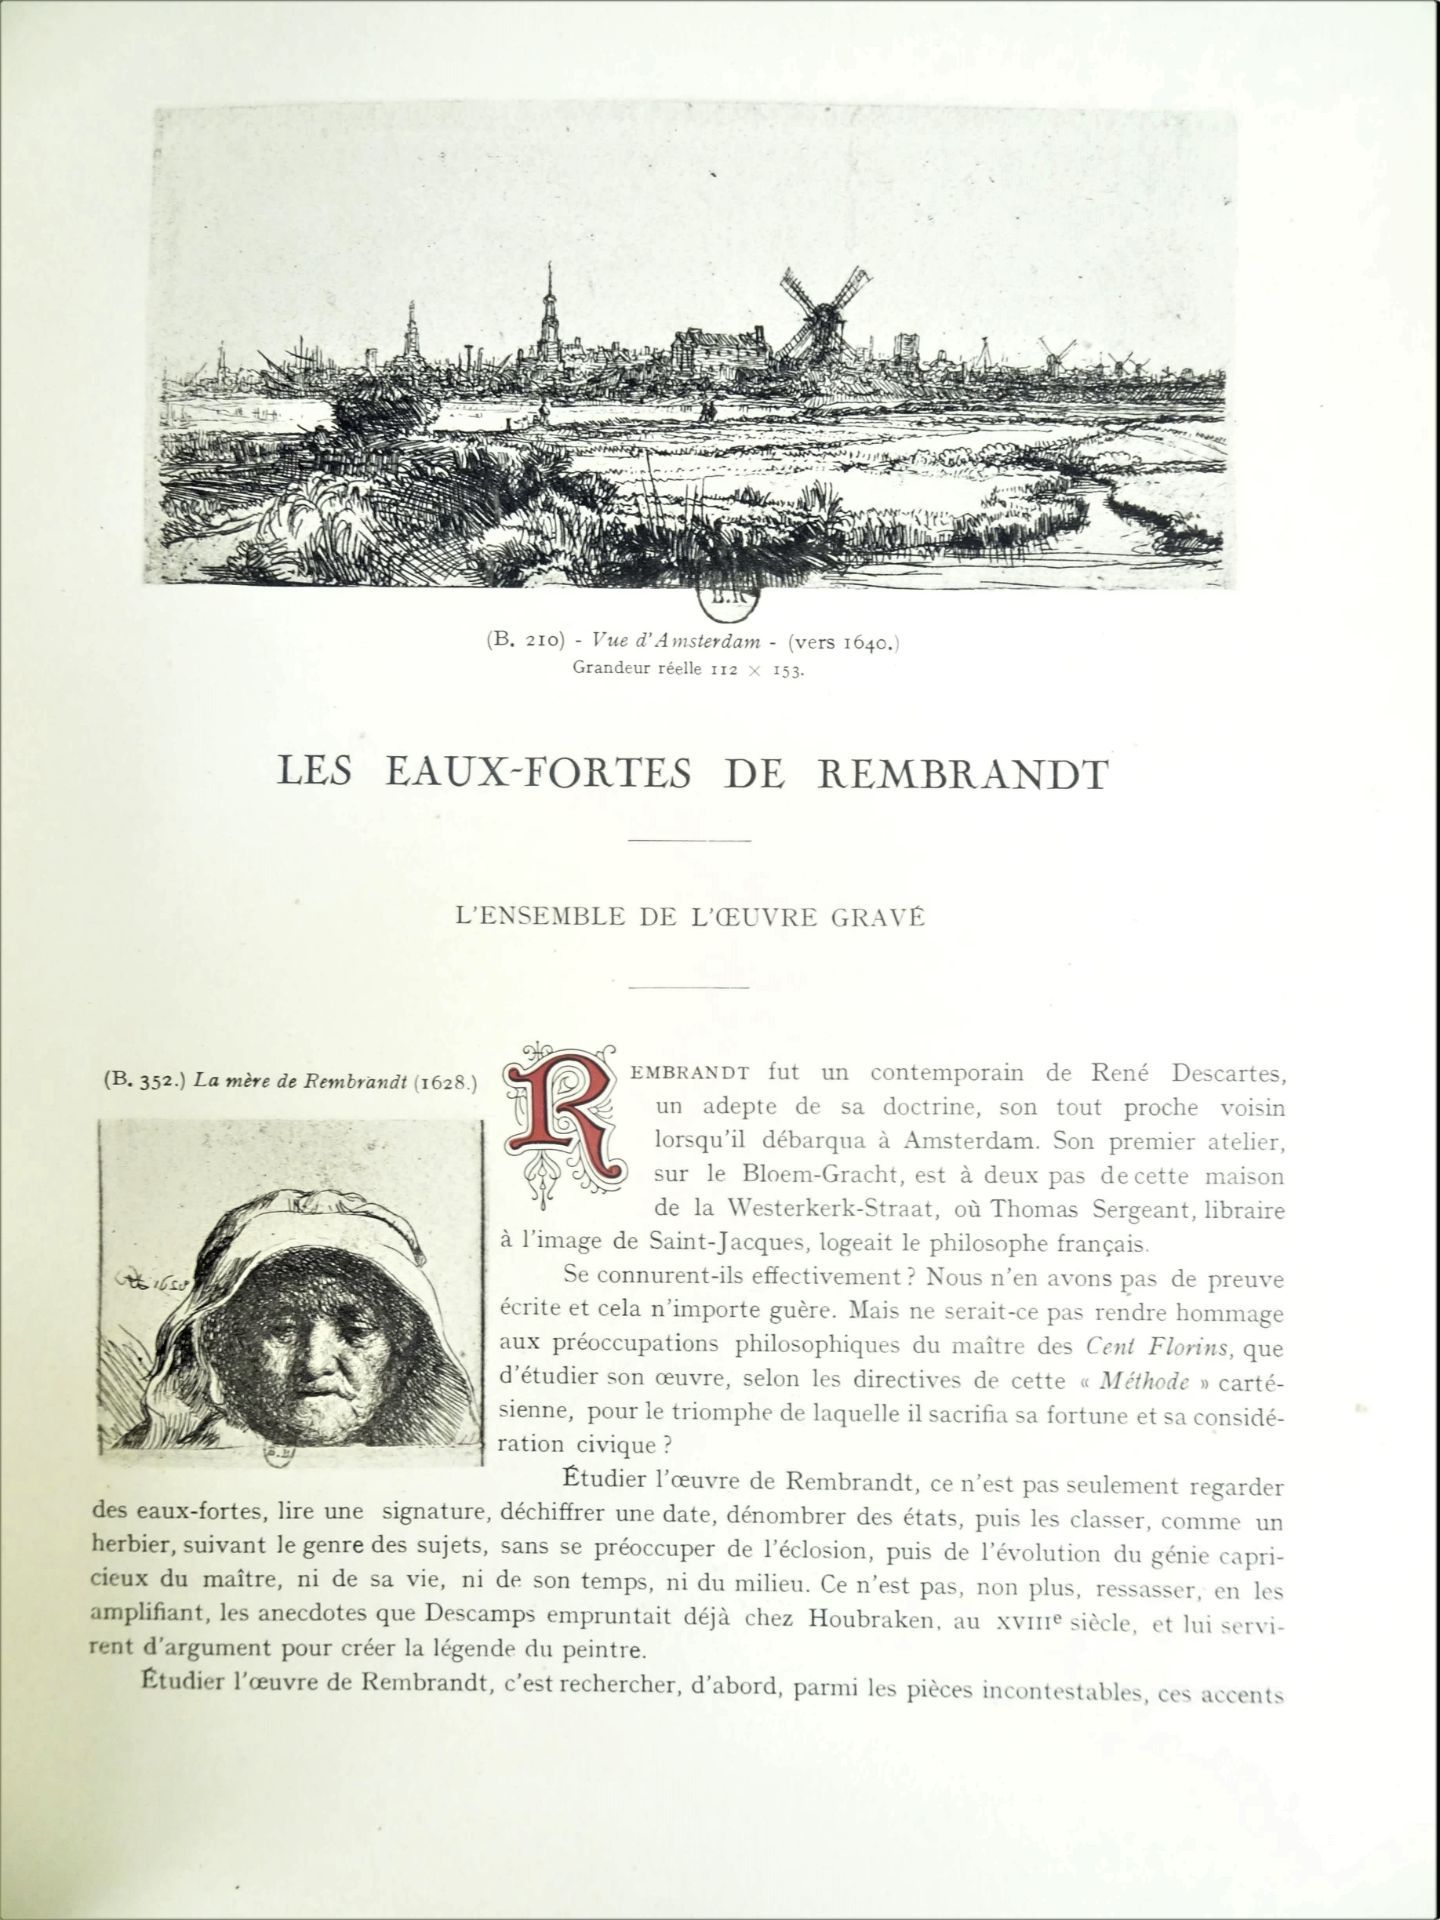 |Art|André Charles Coppier, "Les eaux-fortes de Rembrandt", 1922, limité. Paris, Armand Colin, " - Image 4 of 15